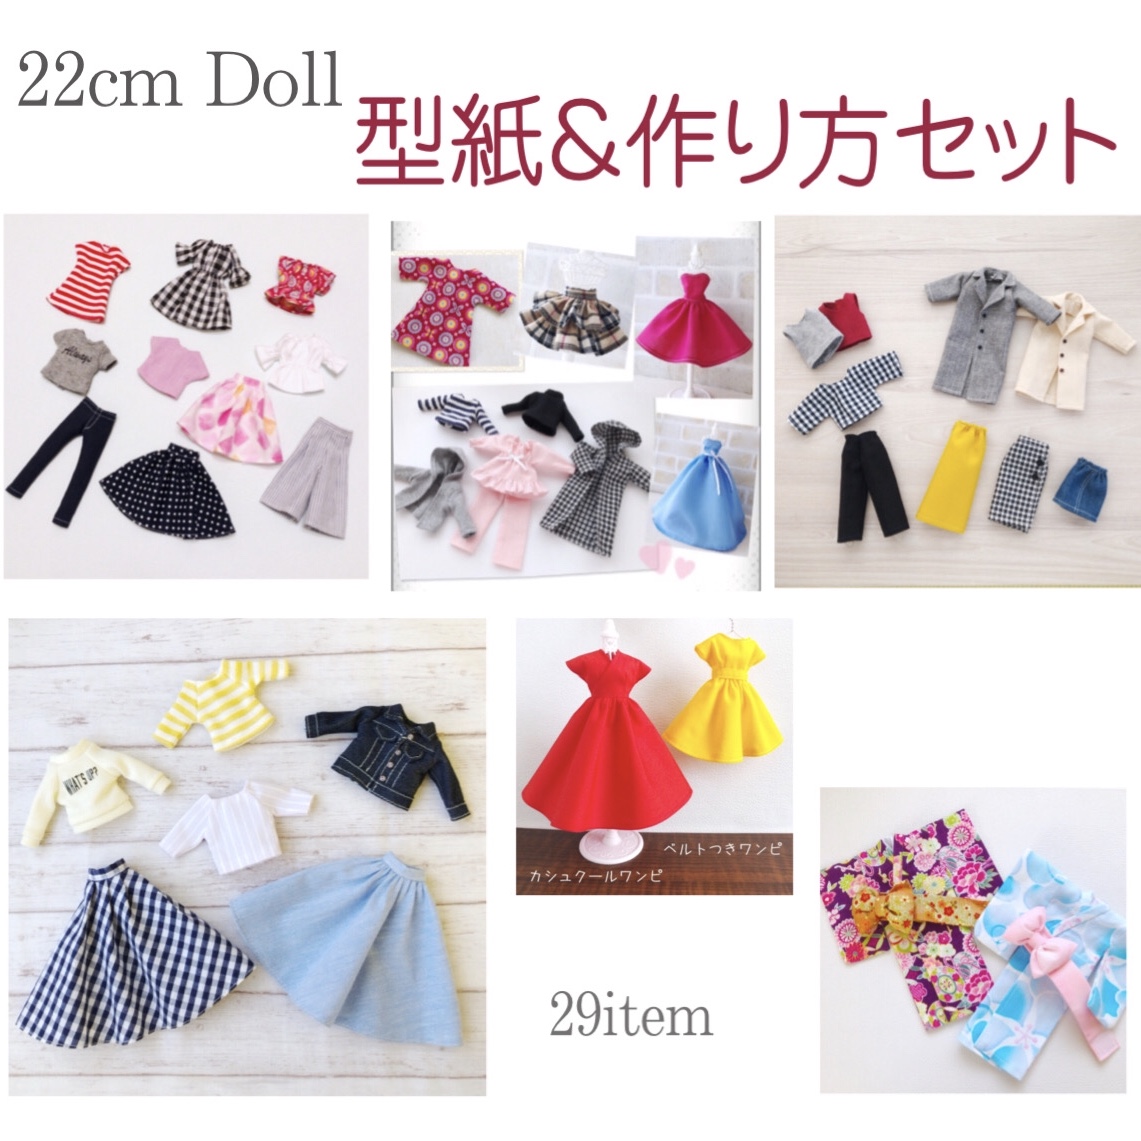 New 22cmドール サイズ型紙 29点セット お人形 服の作り方 型紙 ドール服